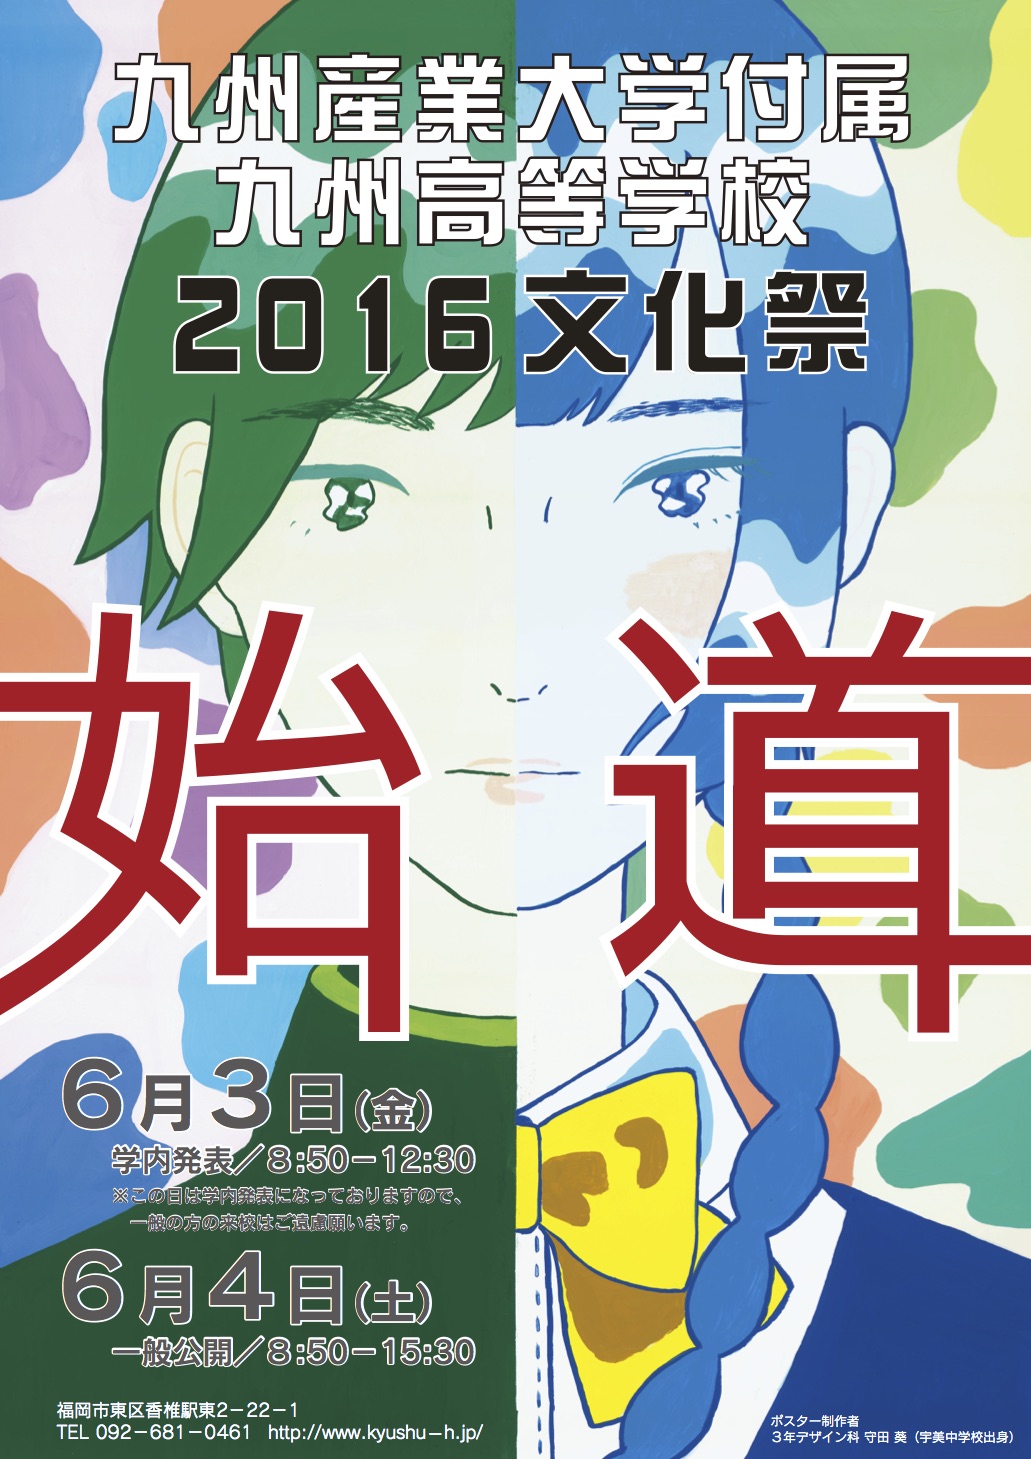 九州高等学校 造形芸術科サイト 平成28年度 文化祭ポスター